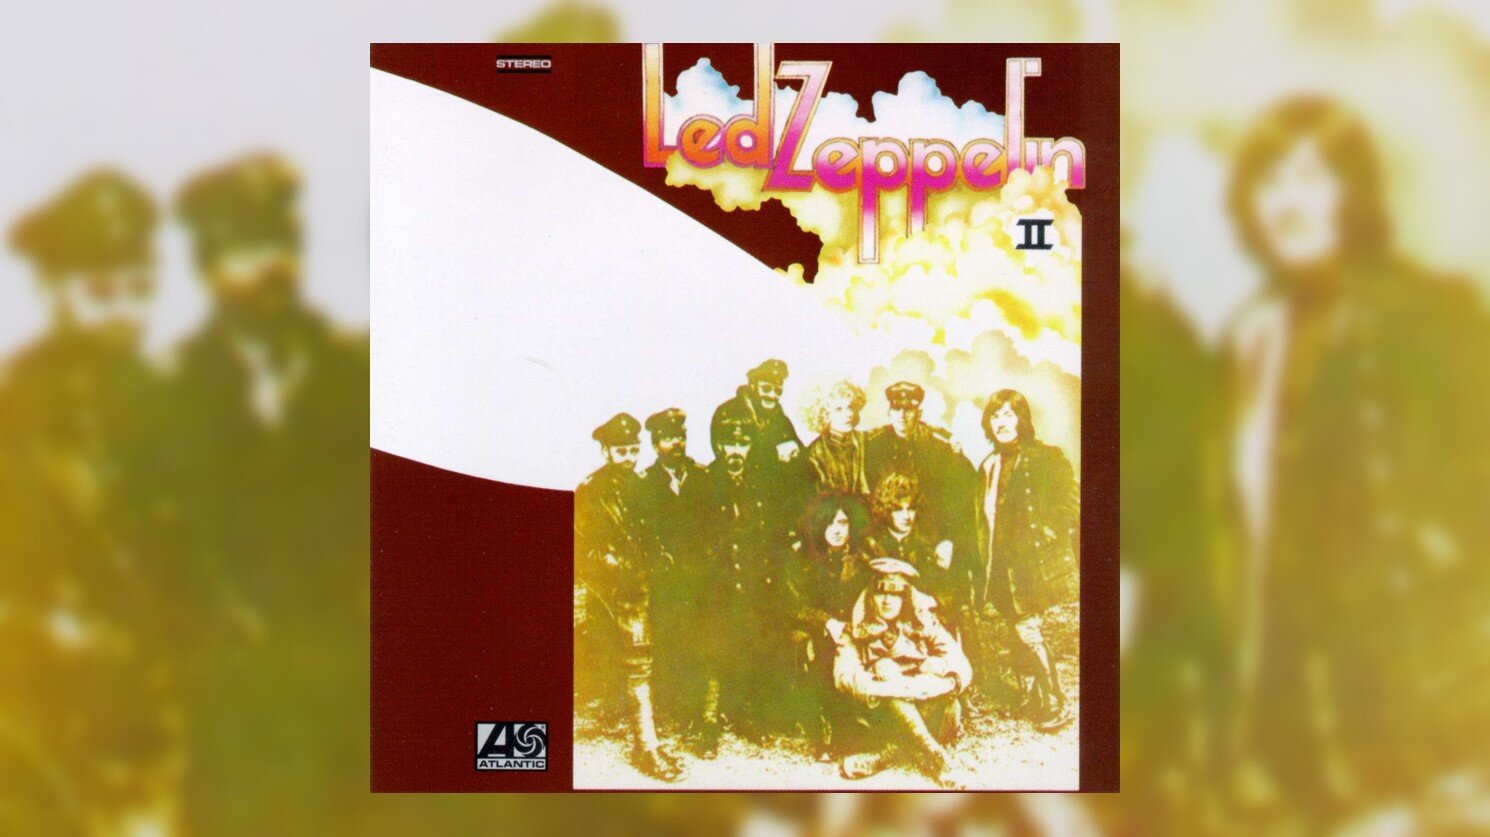 Revisit & Listen to Led Zeppelin's 'Led Zeppelin II' | Tribute